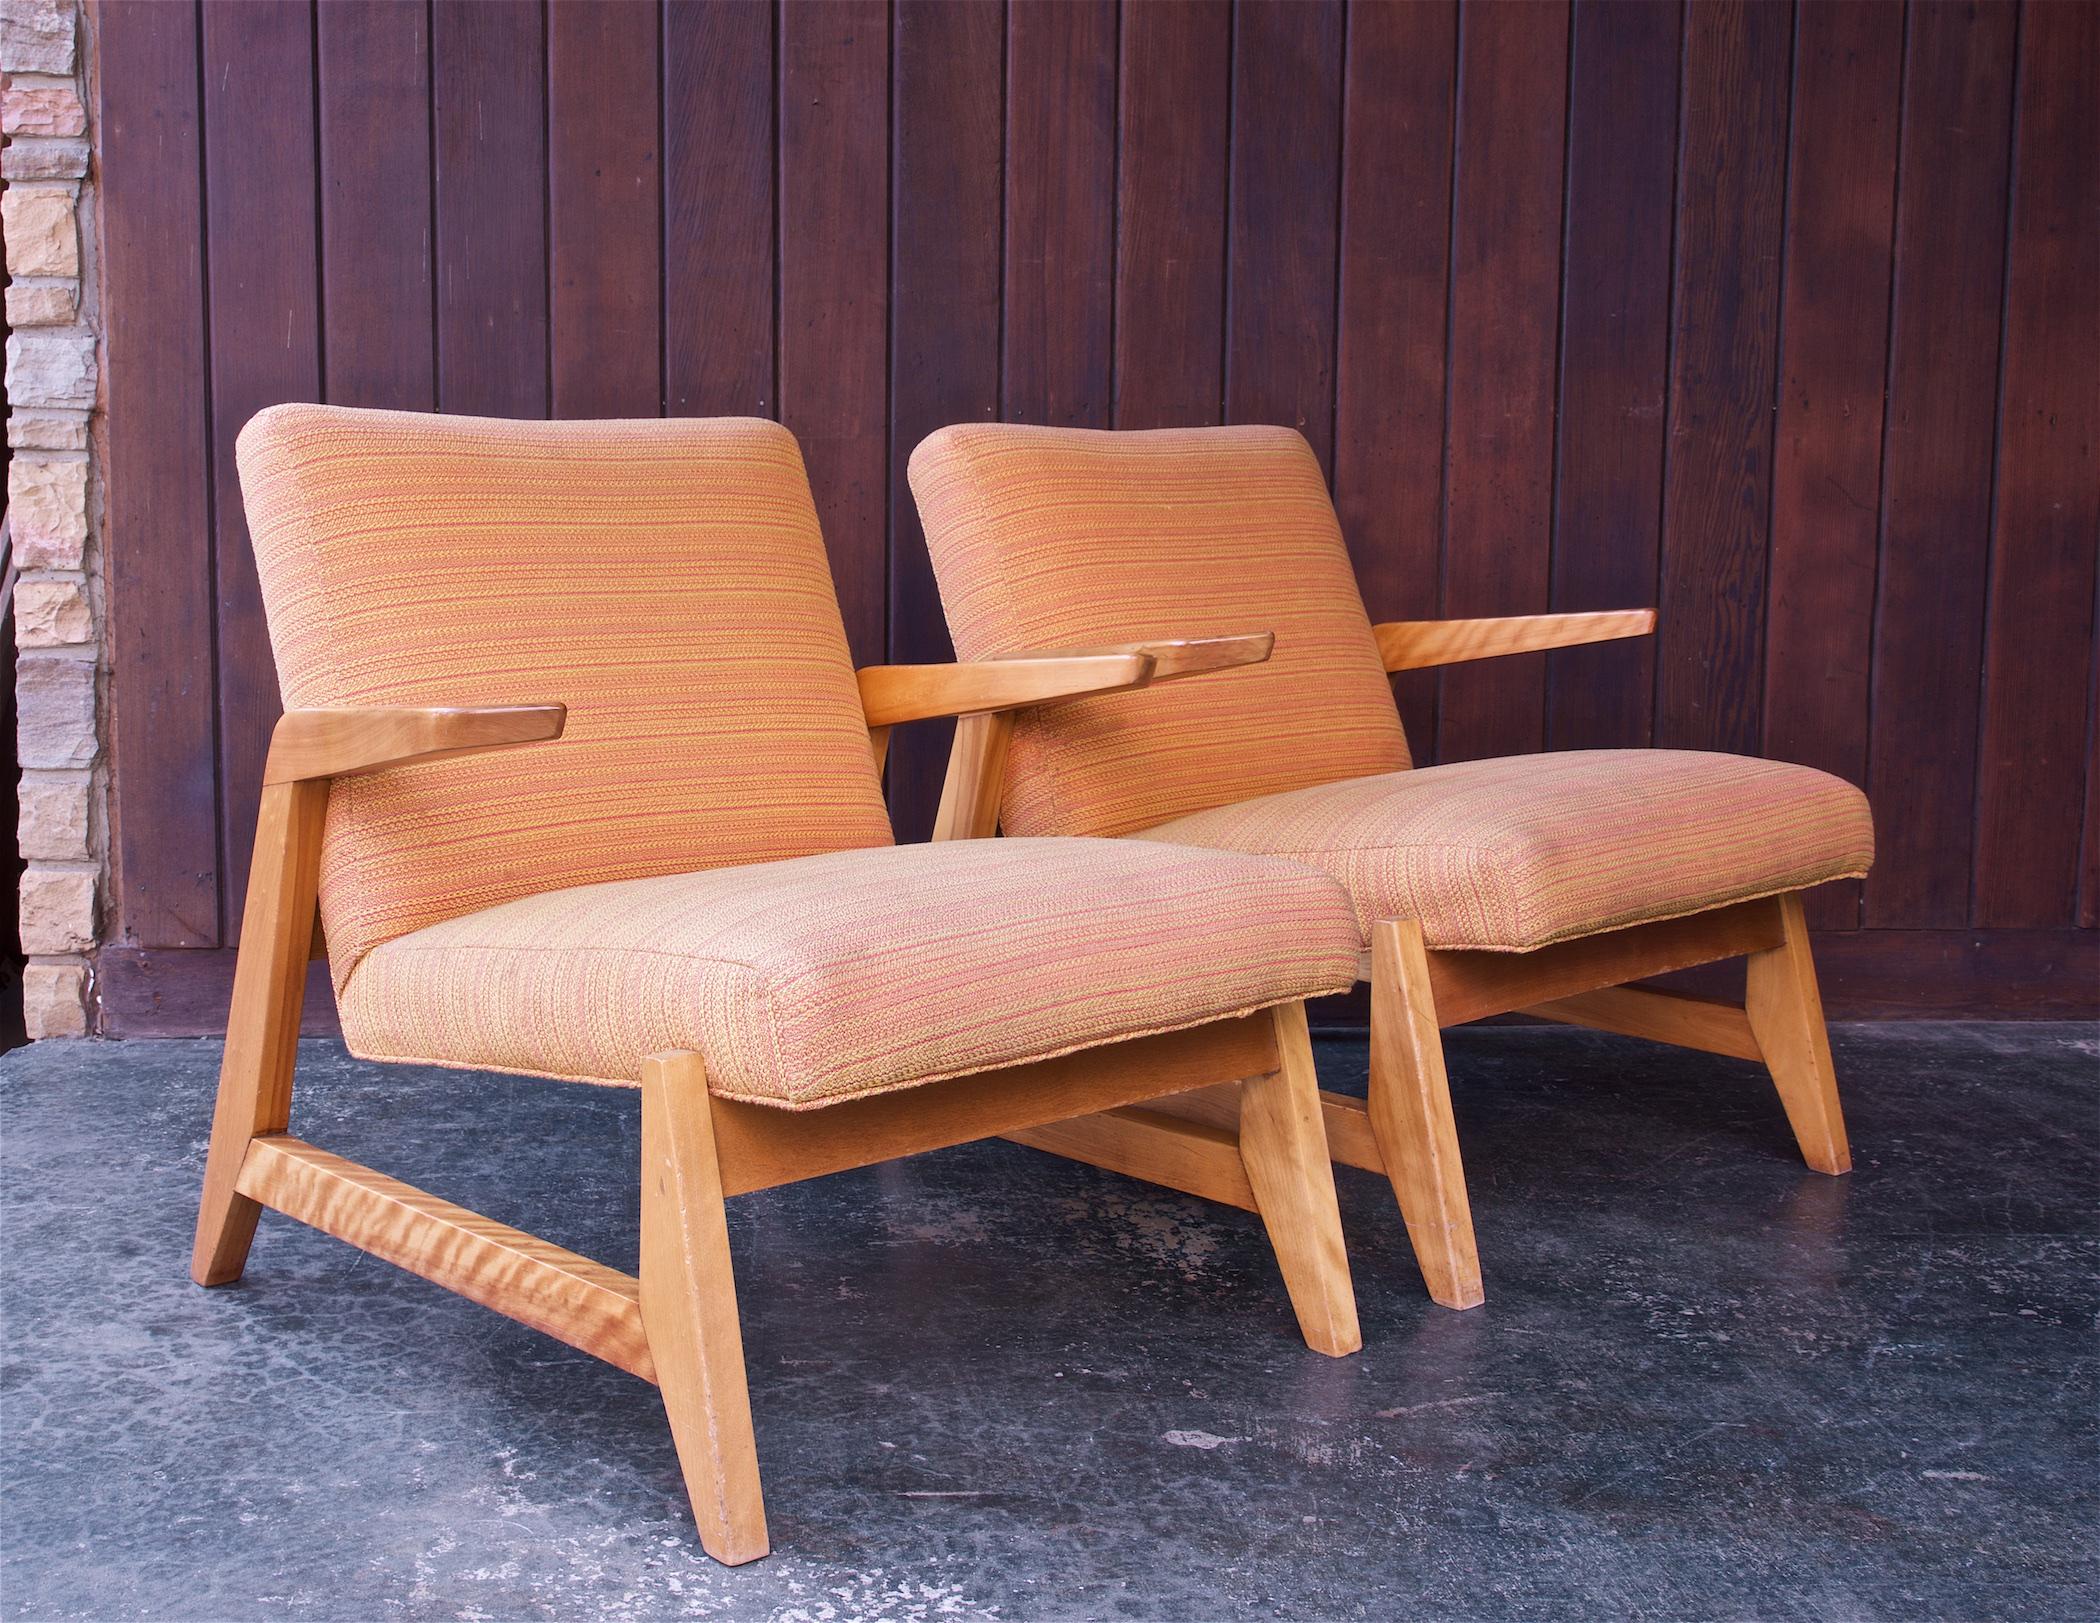 Paire de chaises Knoll très rares, conçues par l'architecte Ralph Rapson.  Rapson a conçu une série de meubles que Knoll & Associates a produite à la fin des années 1940.

Ces chaises ne sont pas restaurées.  Nous conseillons la restauration et le